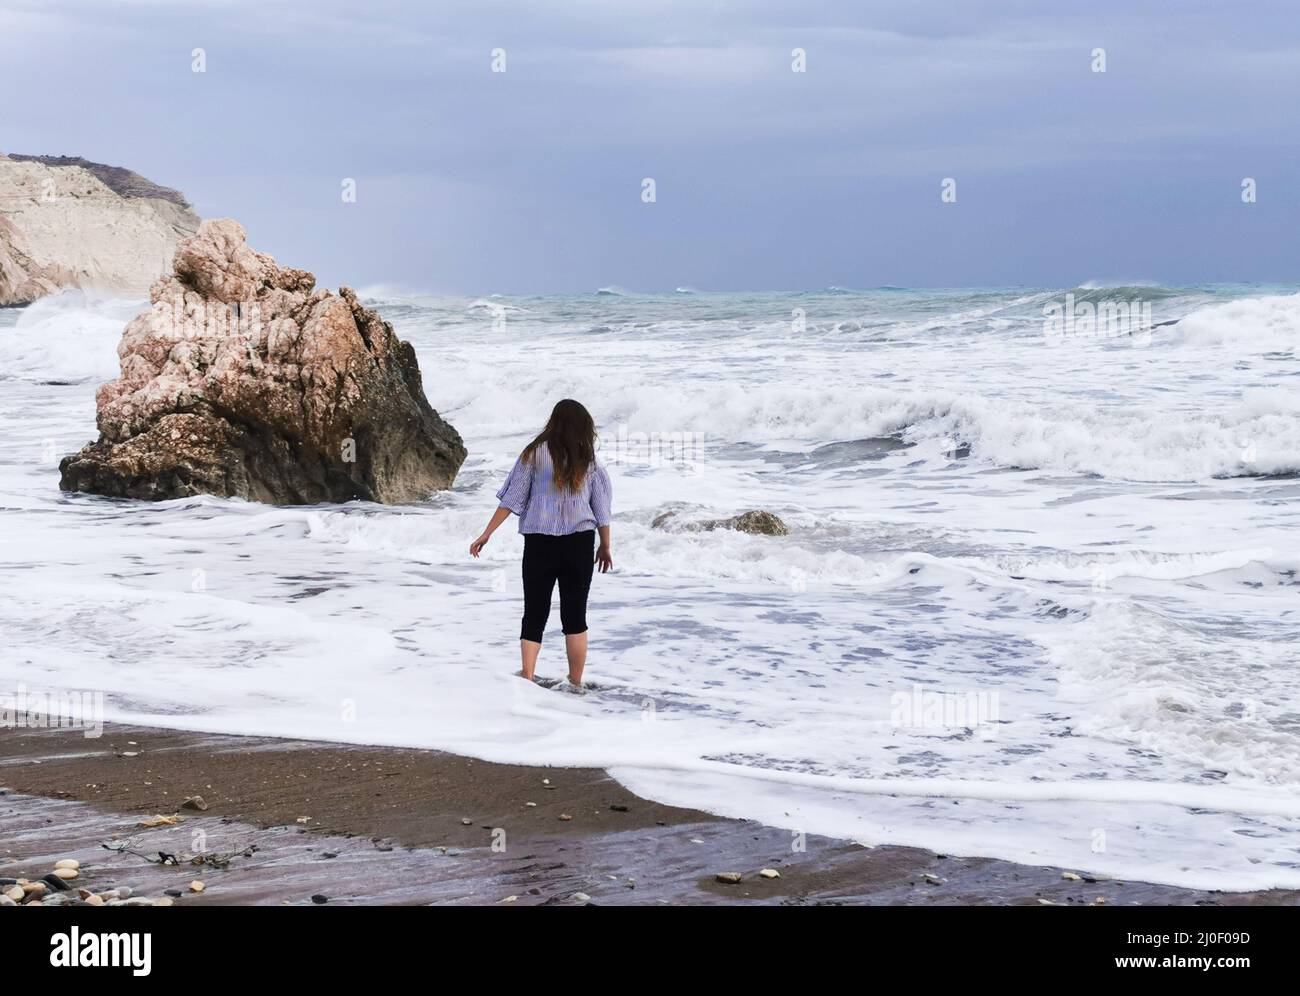 Unerkannte Person am stürmischen Strand. Felsen der Aphrodite Paphos Zypern Stockfoto